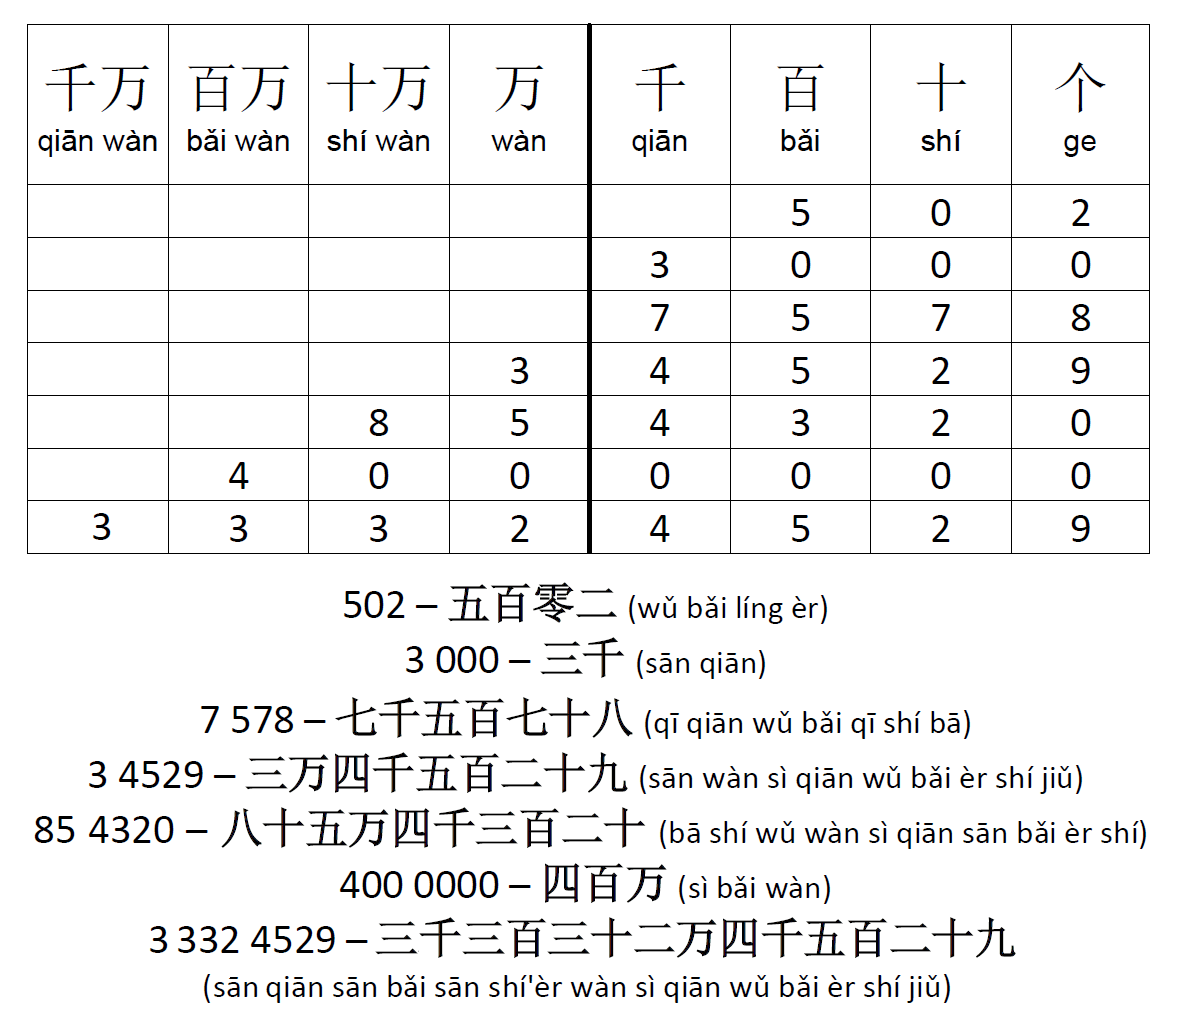 Число китайских иероглифов